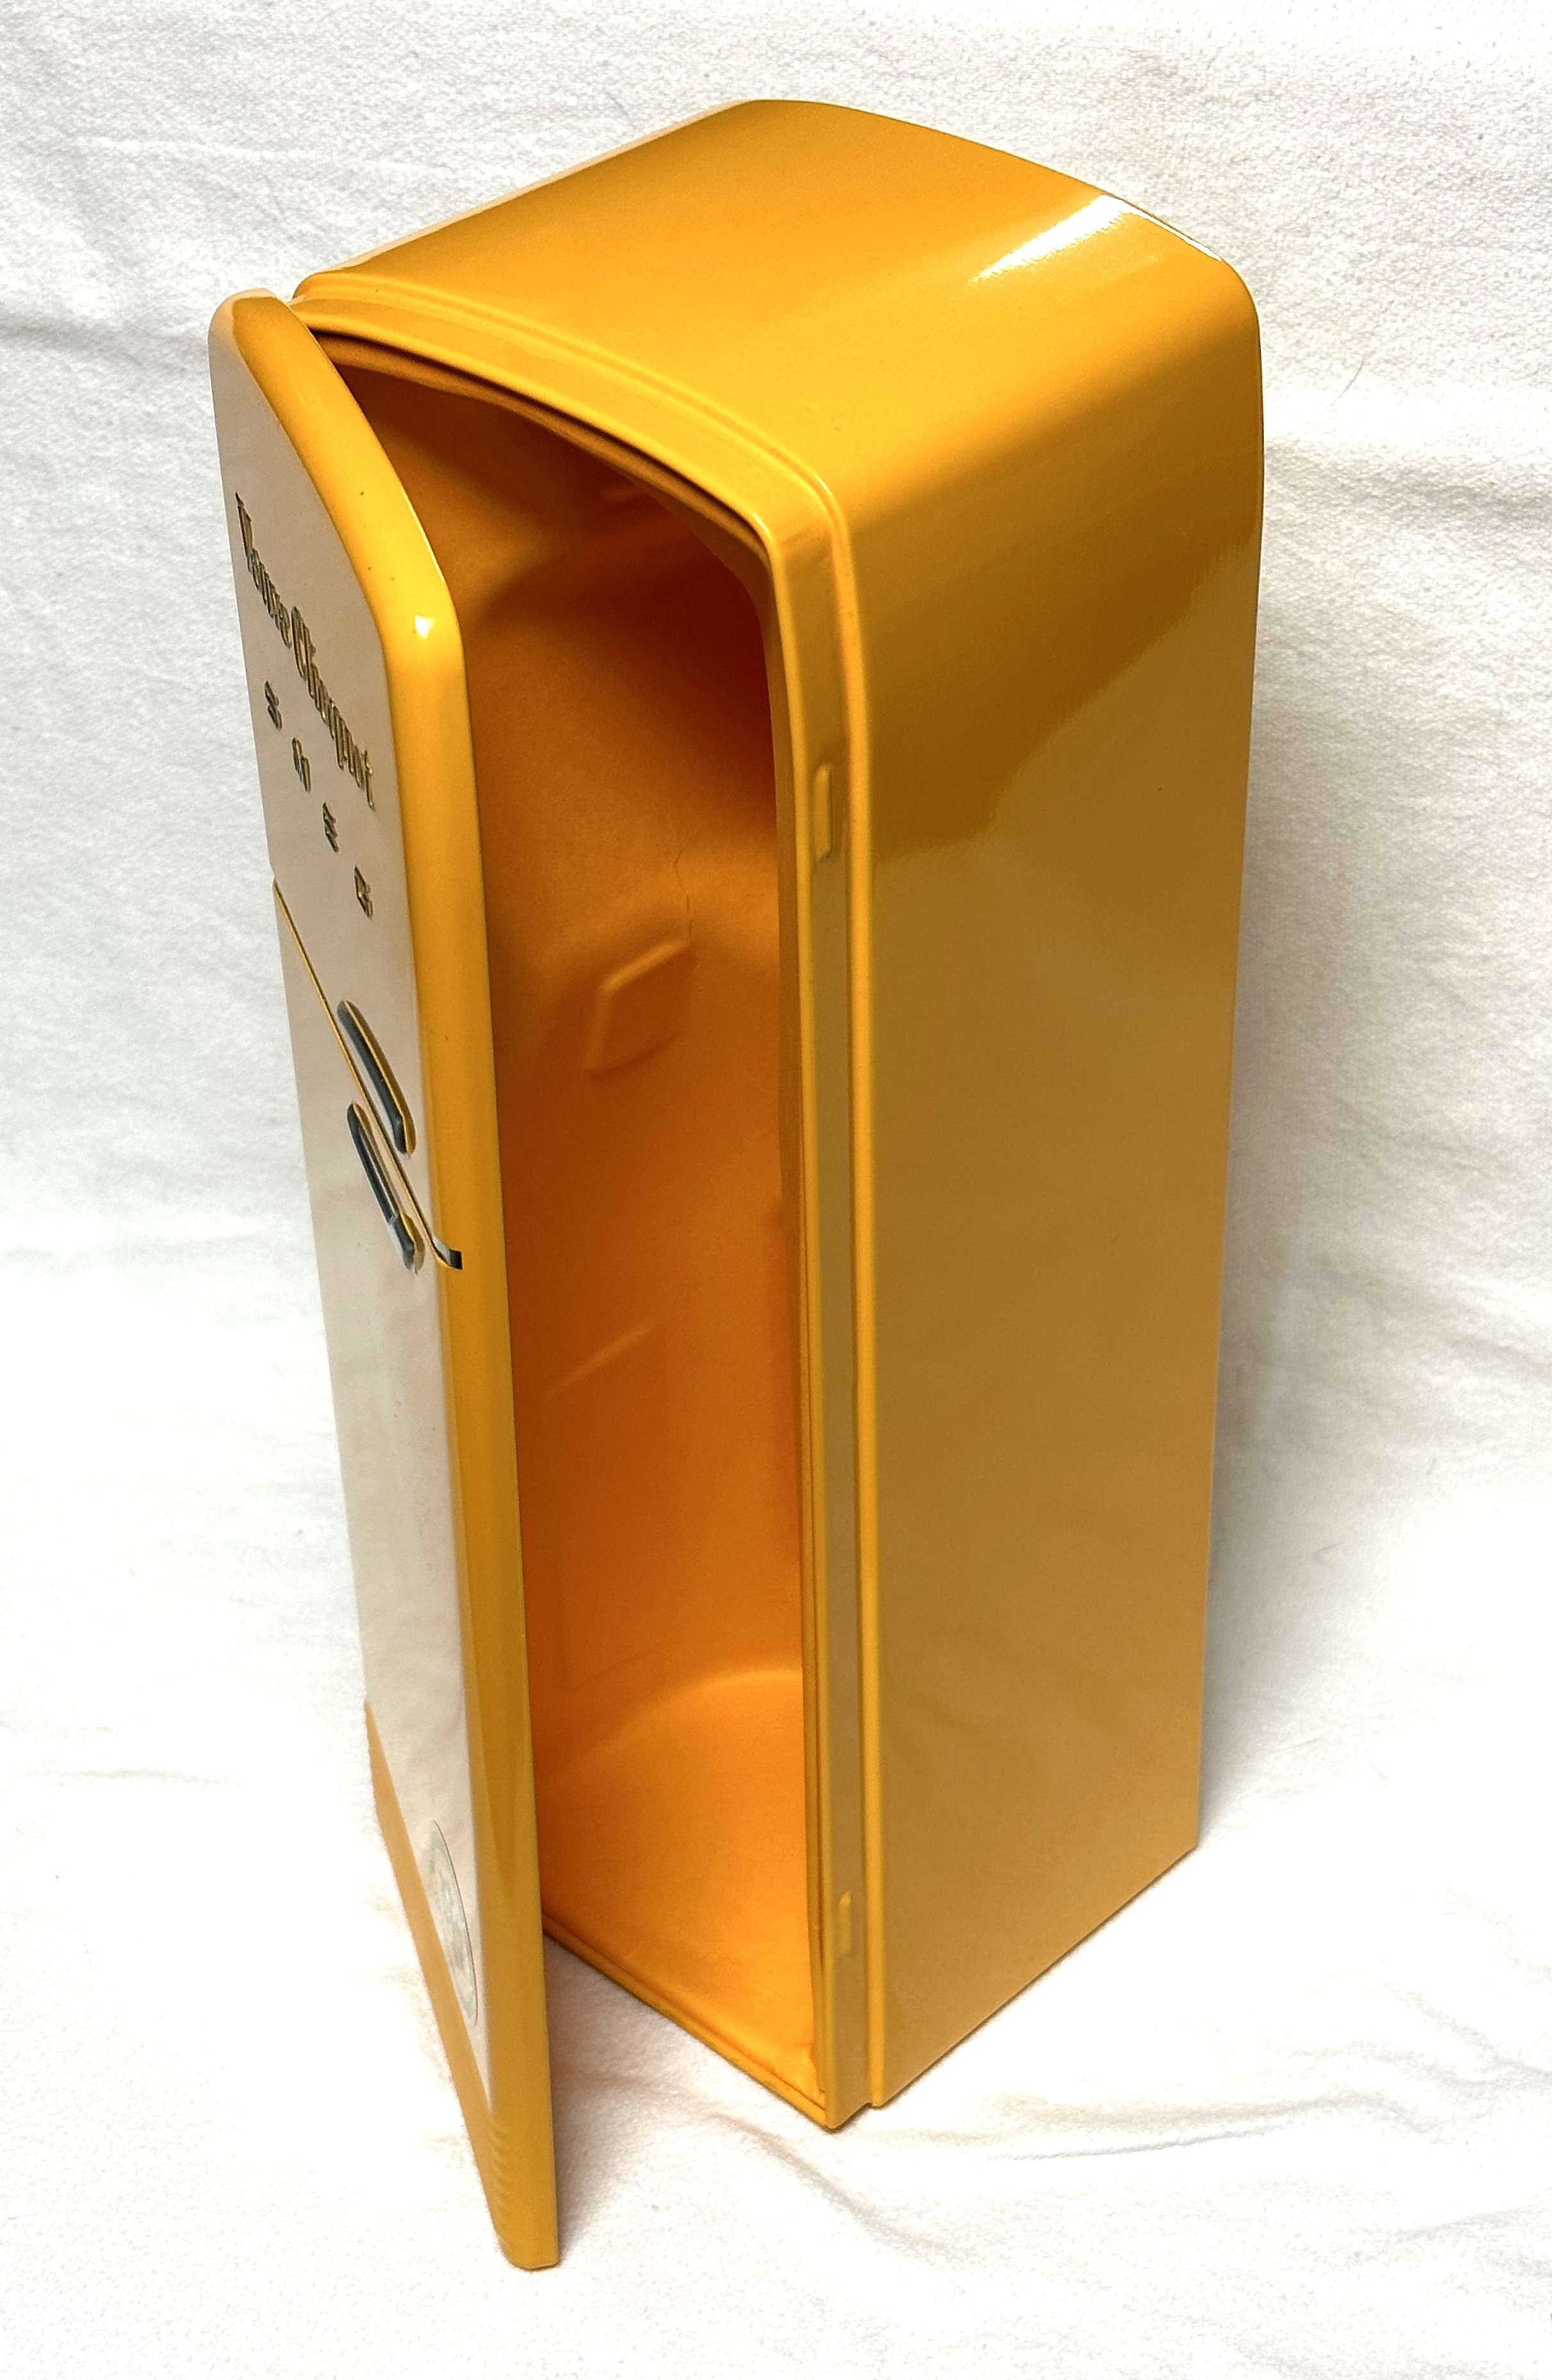 SMEG 50's Style Retro FAB 10 Veuve Clicquot Refrigerator, Special Edition